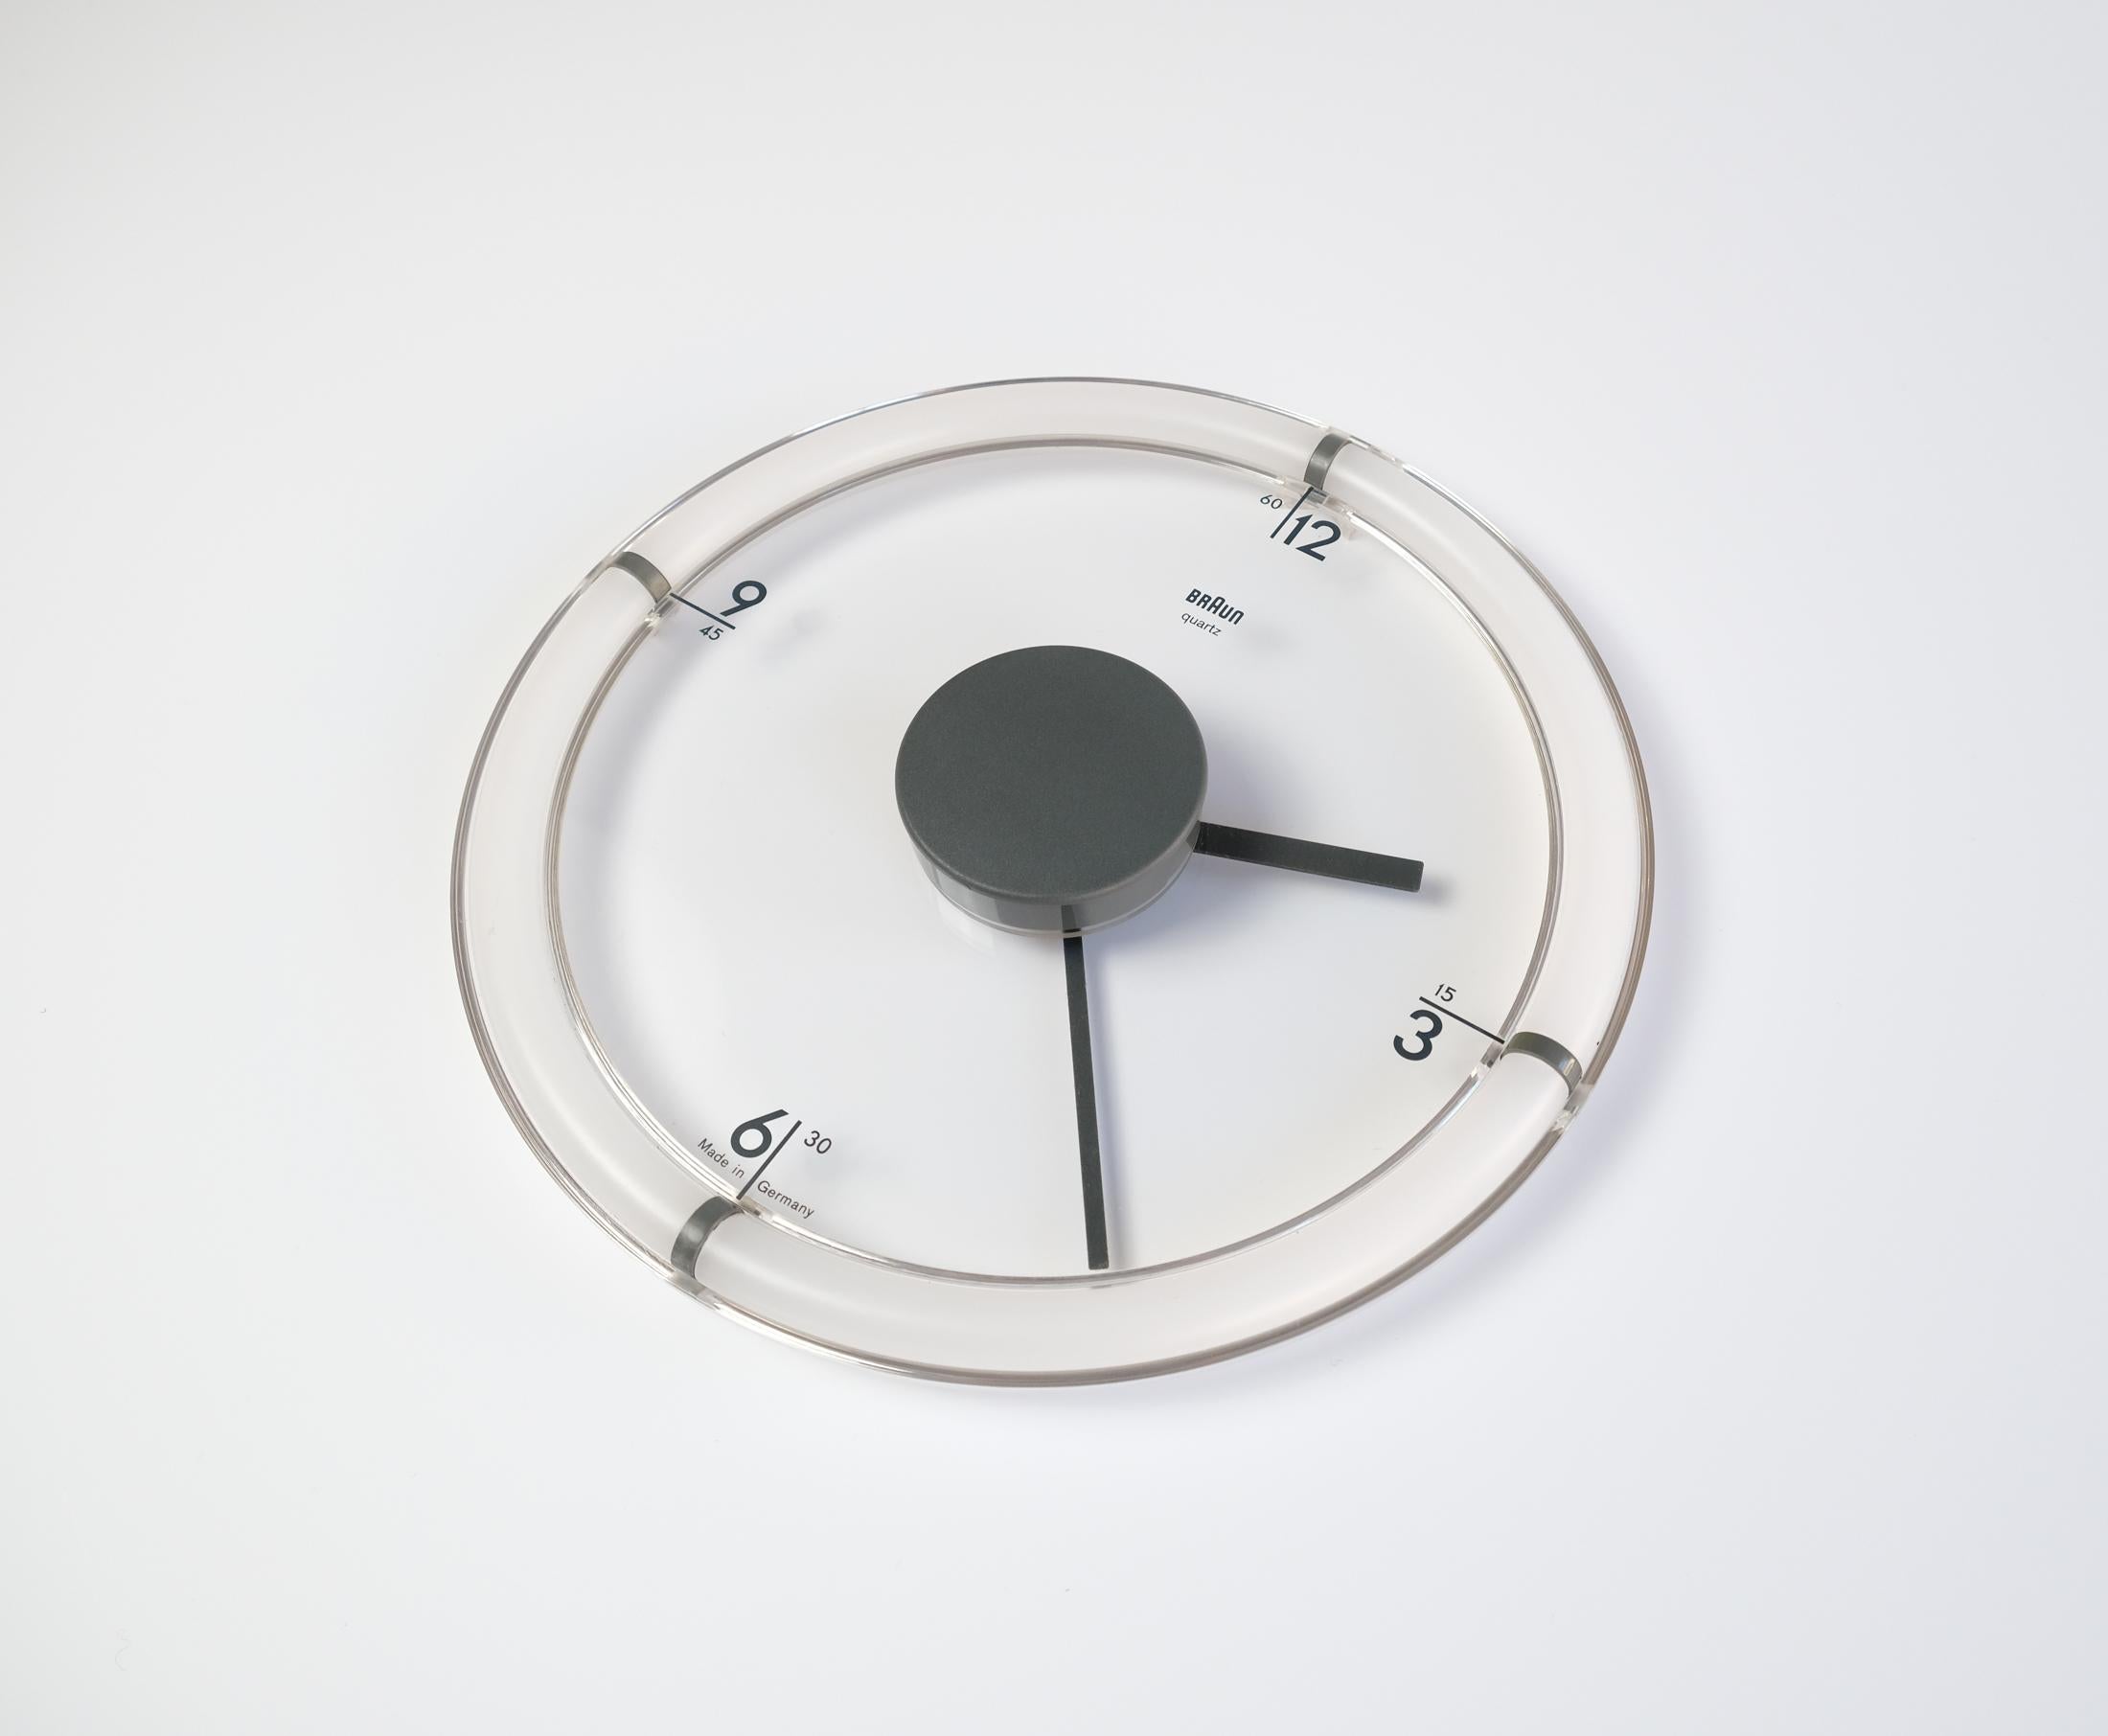 Une horloge murale rare et emblématique du modèle ABW-35 BRAUN, conçue par Dietrich Lubs en 1988. 

Avec l'ABW 35, Lubs a conçu un moyen pour que l'horloge se fonde dans l'arrière-plan sur lequel elle est placée en rendant le cadran transparent. De